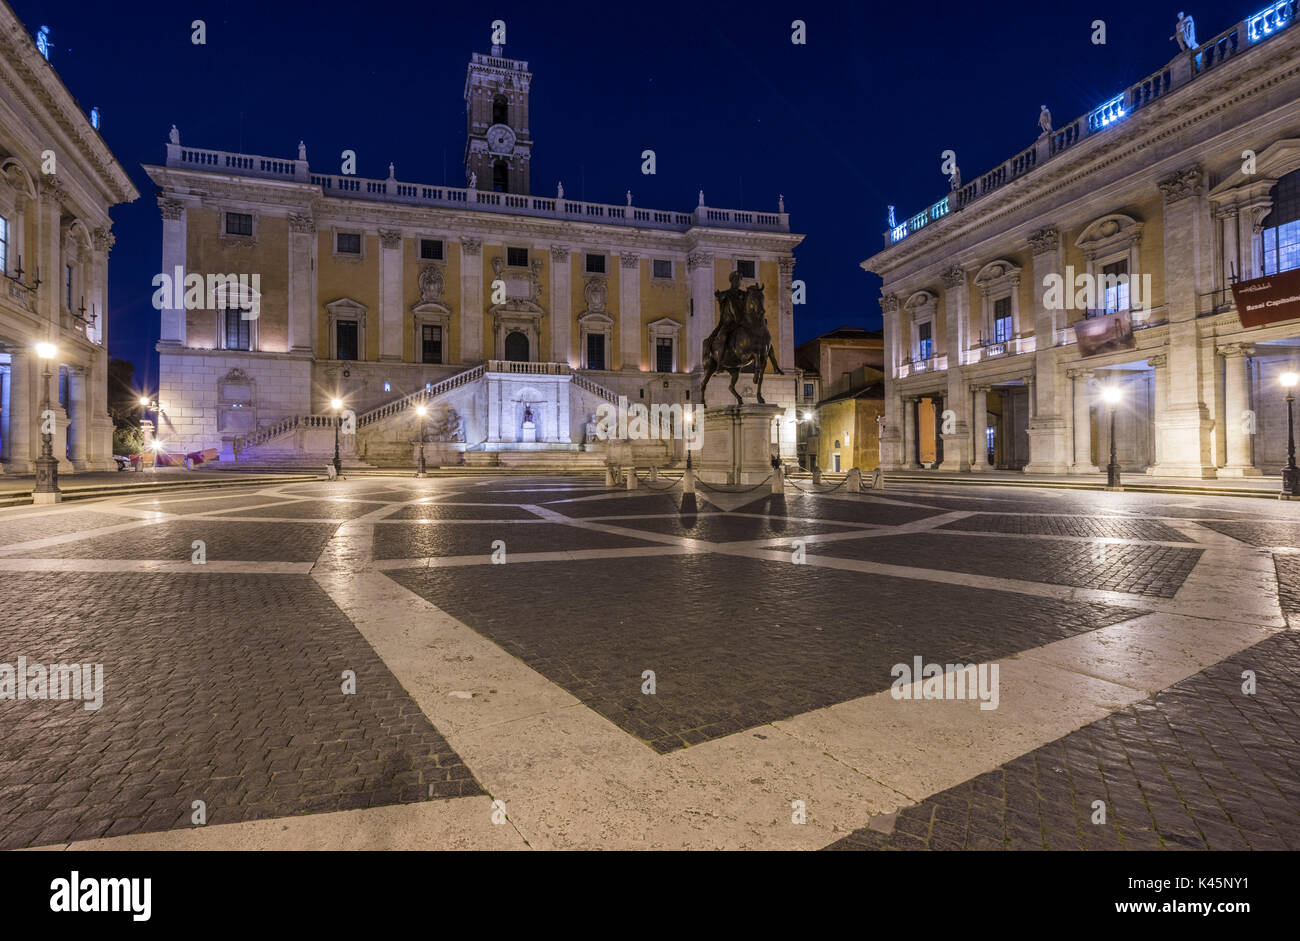 Capitoline Hill, Rome, Lazio, Italy. Piazza del Campidoglio by night with the replica of the equestrian statue of Marcus Aurelius. Stock Photo